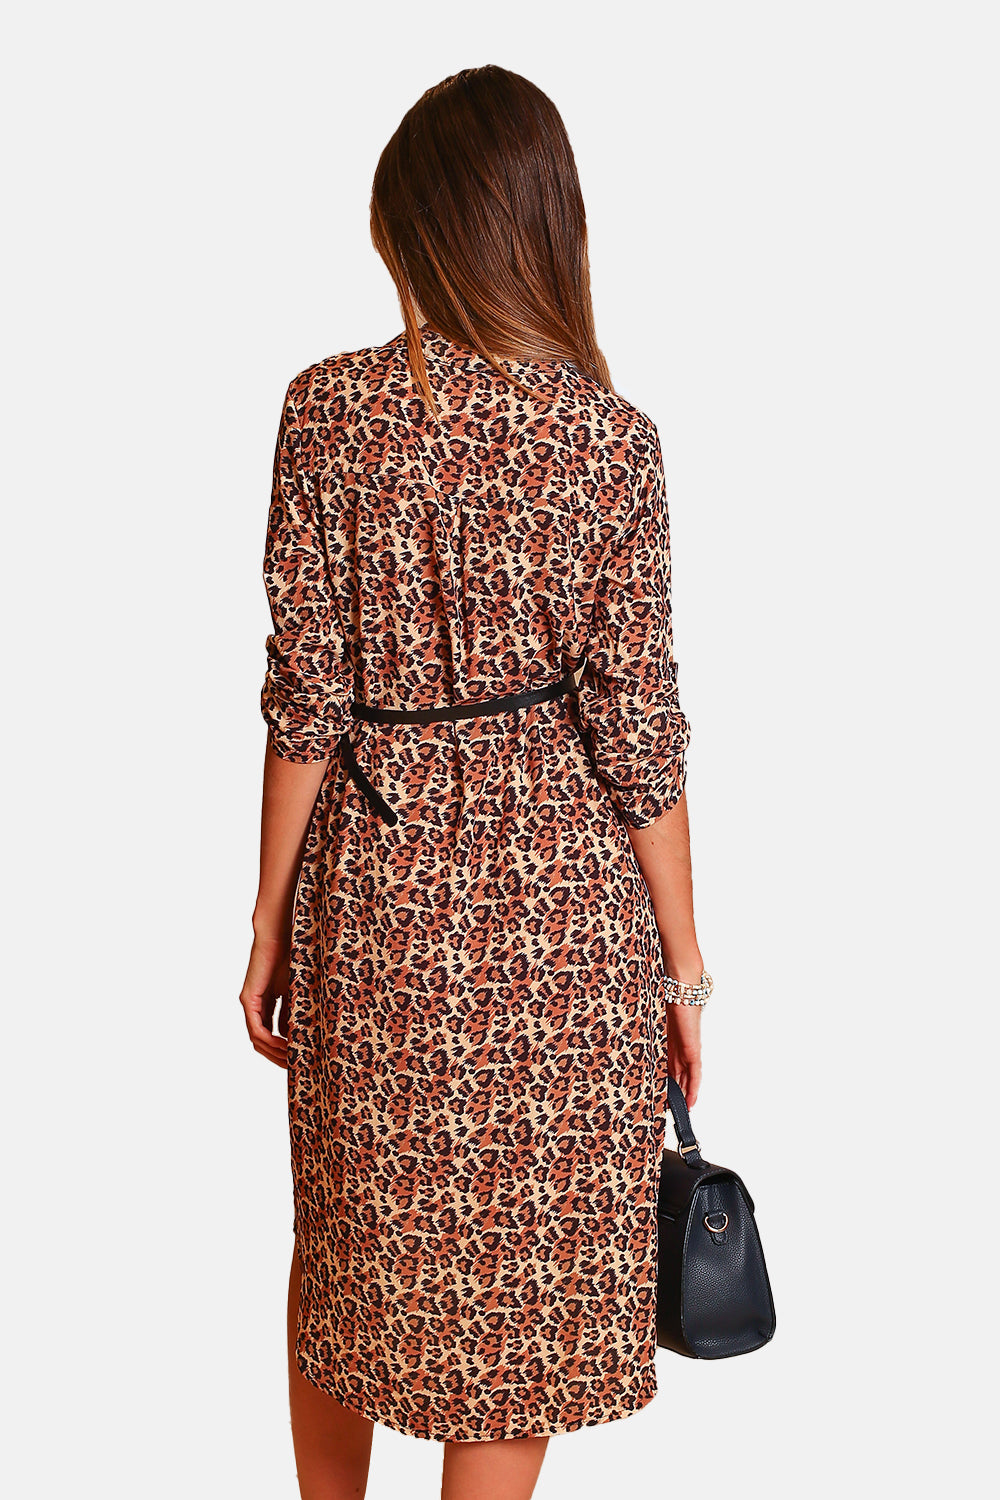 Kleid mit Leopardenmuster, tunesischer Kragen, lange Ärmel, schicker Gürtel